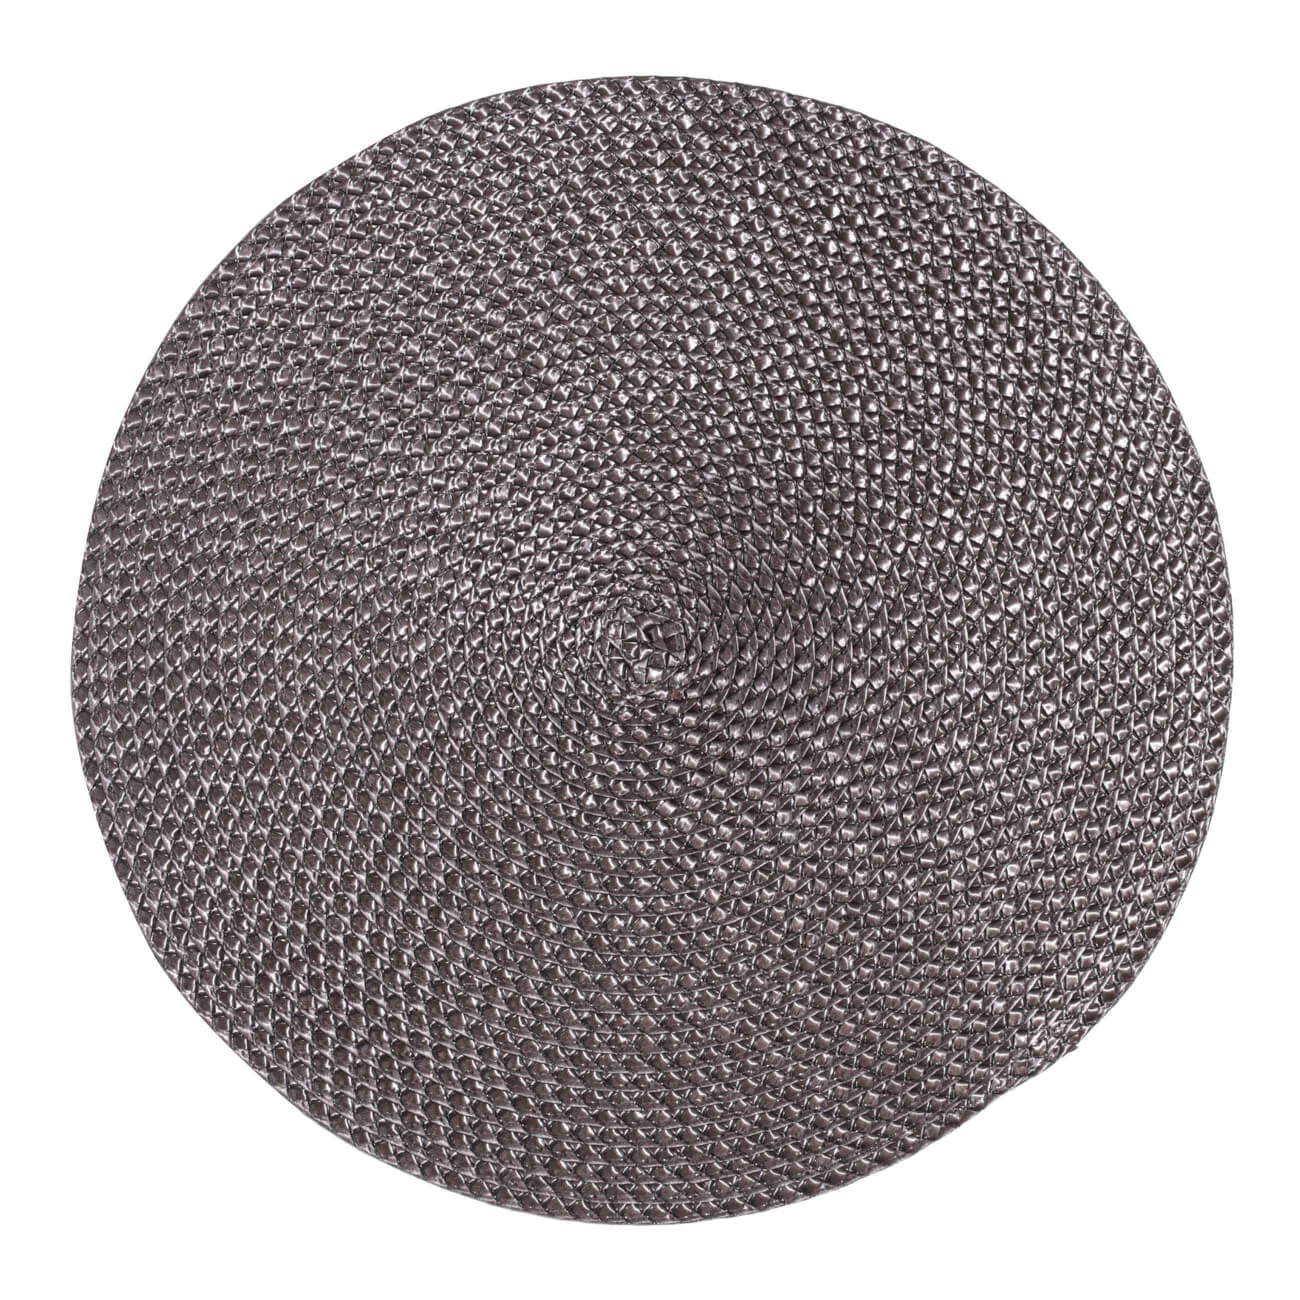 Салфетка под приборы, 38 см, полипропилен/ПЭТ, круглая, коричневая, Circle braid салфетка микрофибра ladina